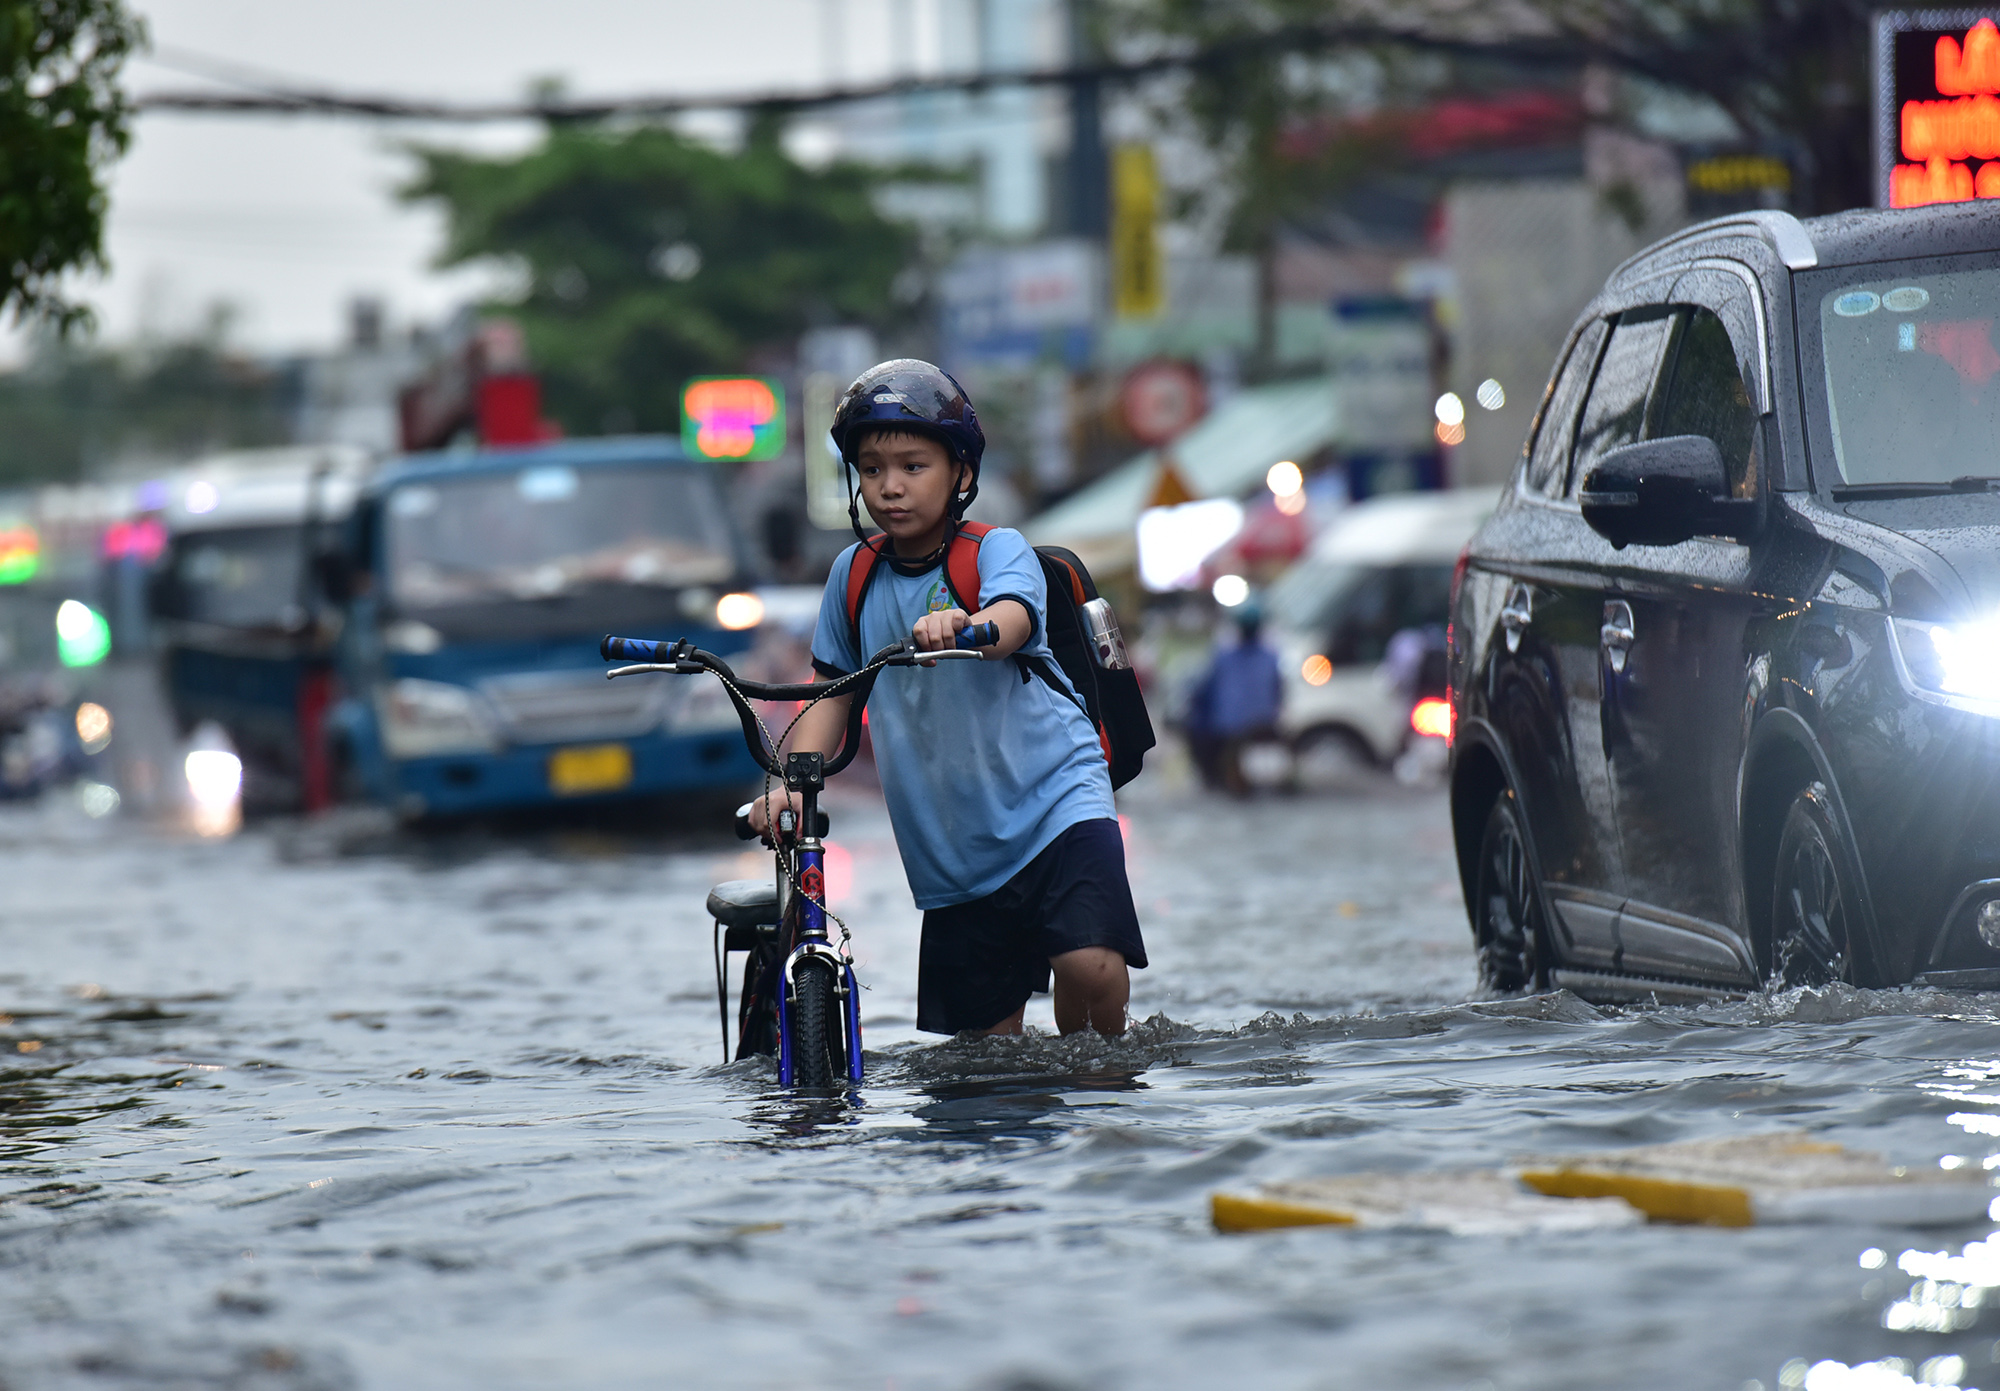 Đường ngập lút bánh xe, người người vất vả lội nước về nhà sau trận “mưa vàng” - 7